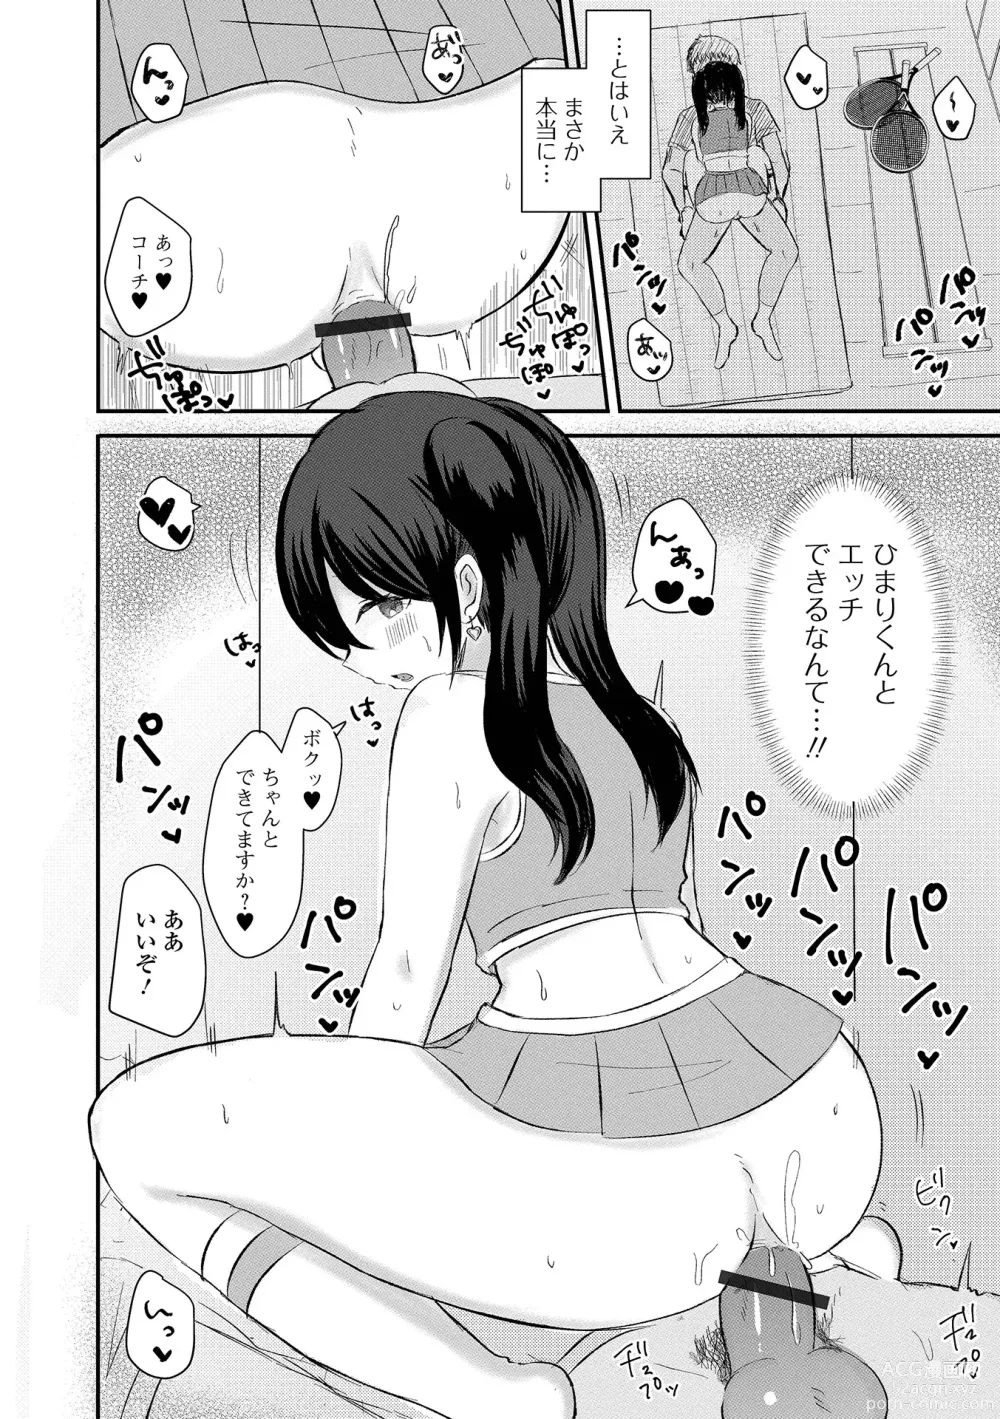 Page 92 of manga Gekkan Web Otoko no Ko-llection! S Vol. 92